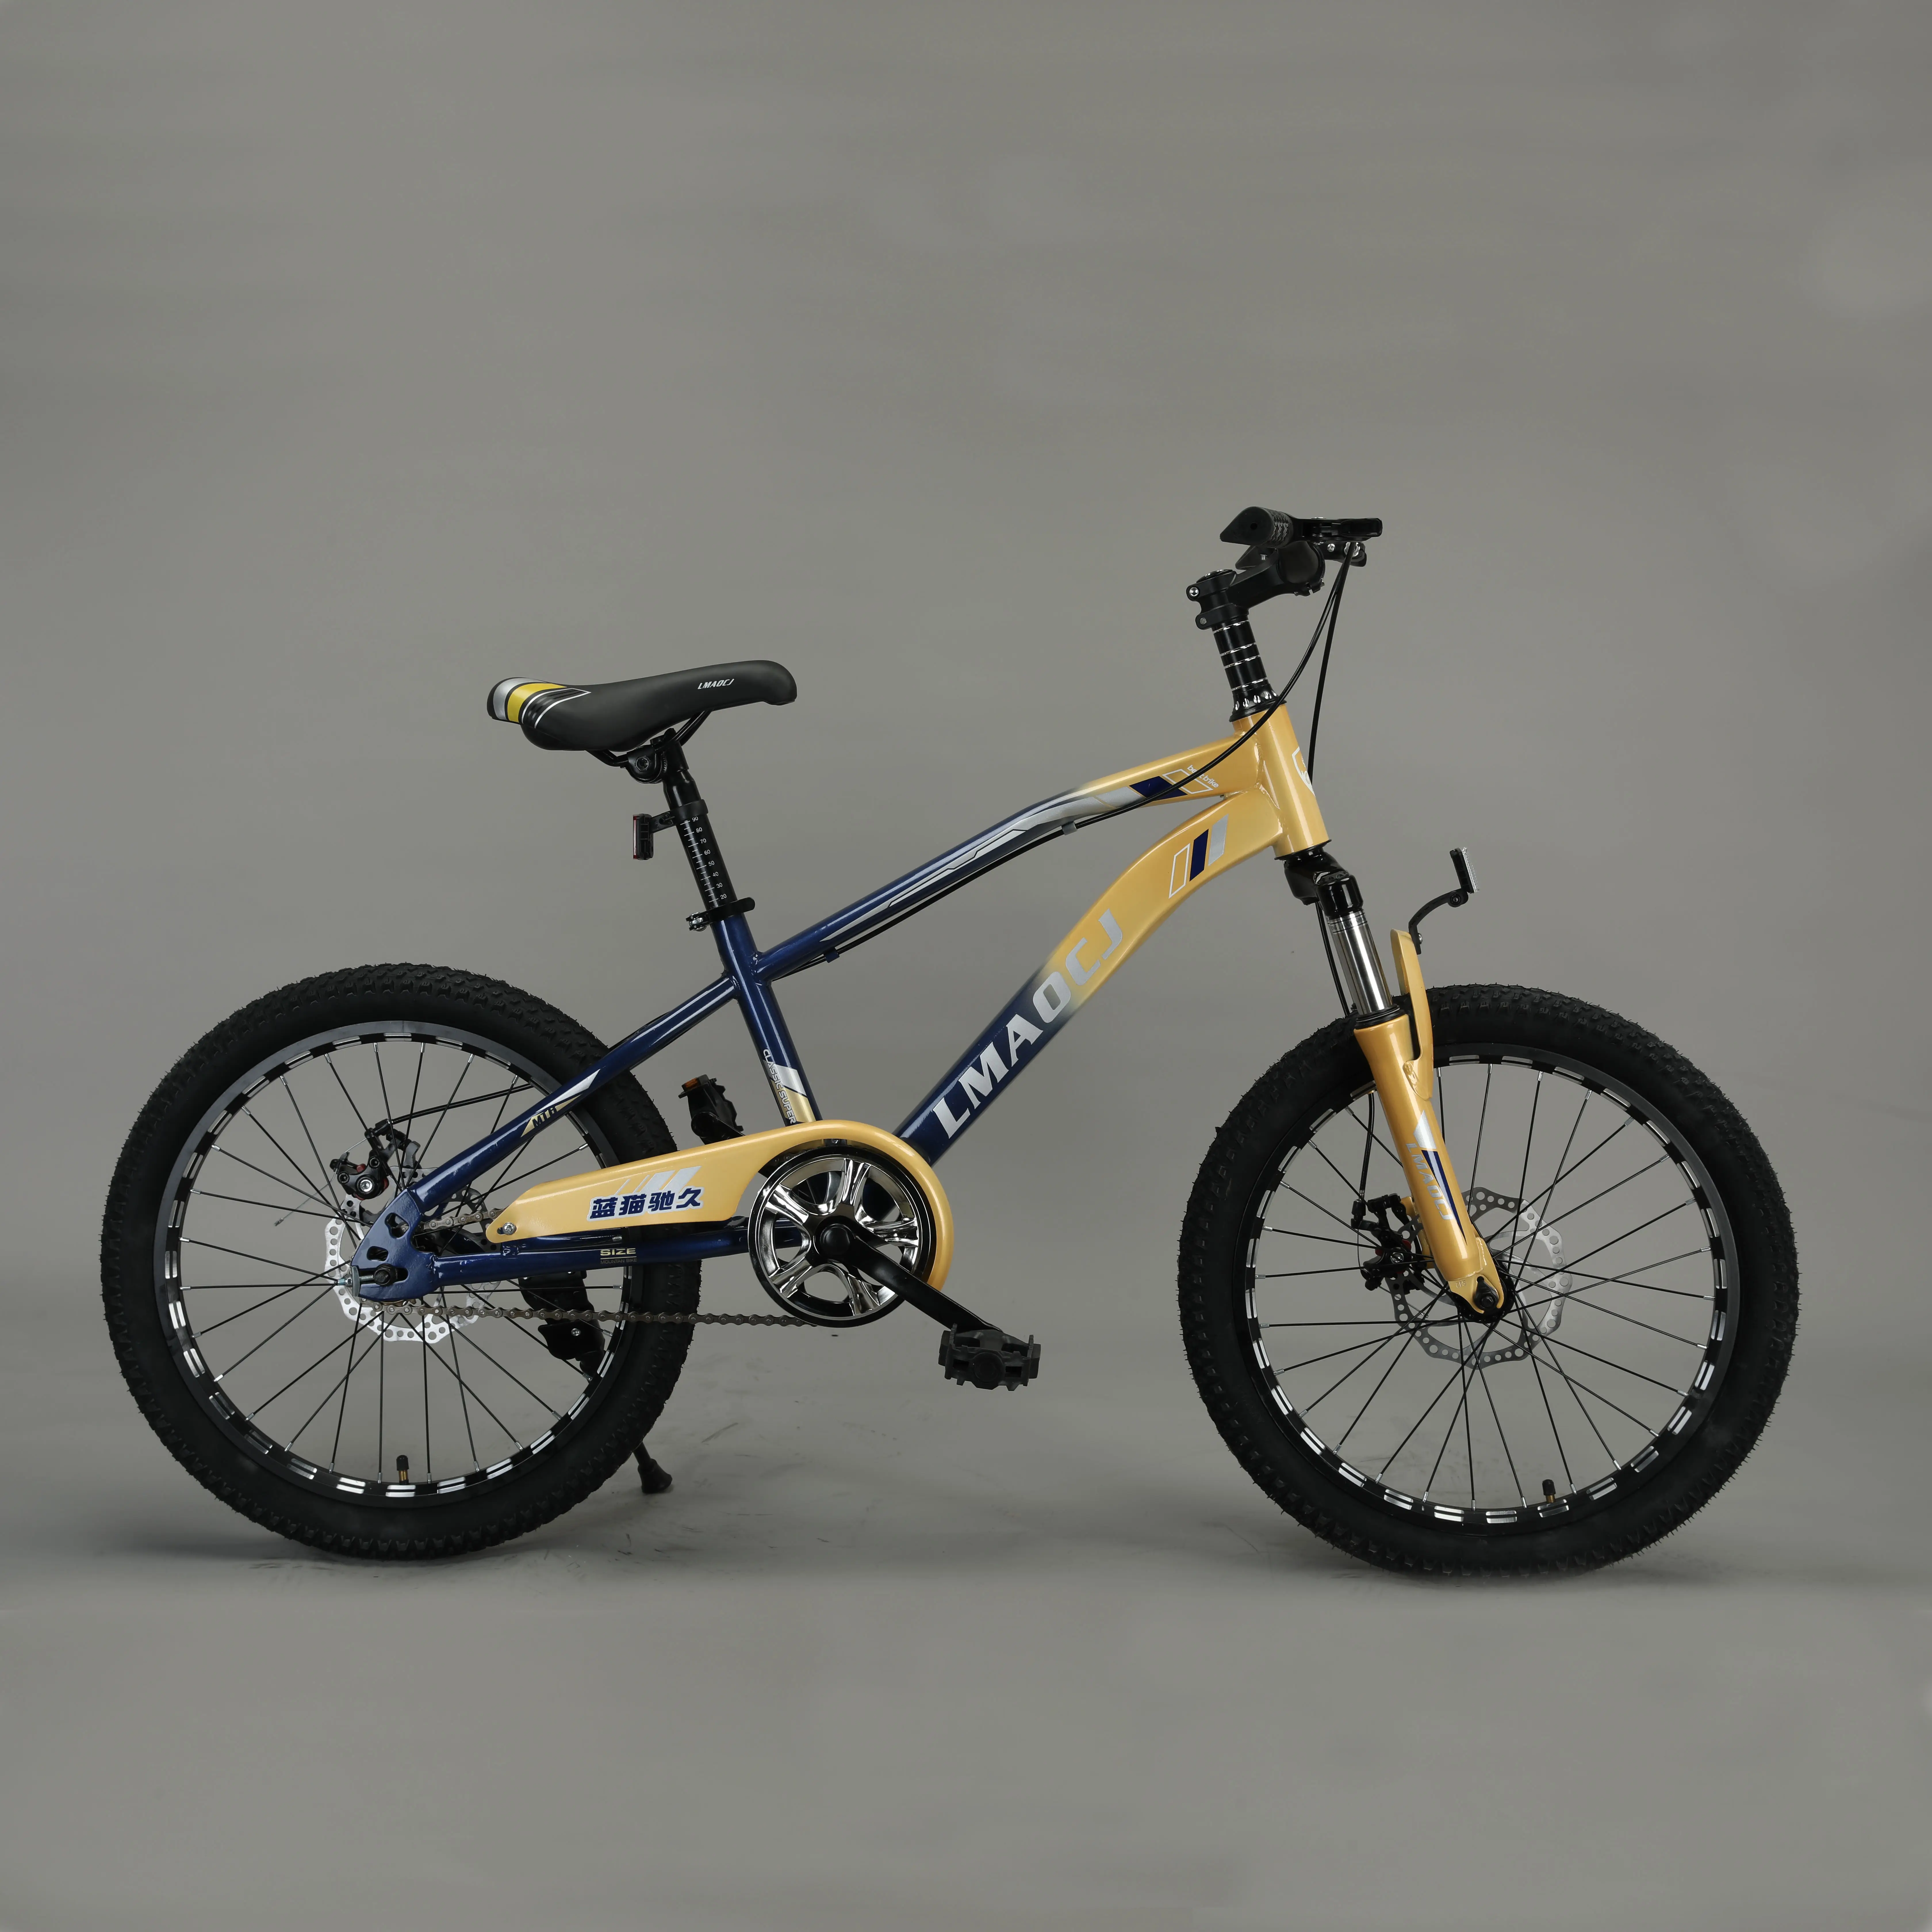 دراجة جبلية للأطفال ذات مبيعات عالية من المصنع, دراجة جبلية للأطفال من عمر 8-16 عامًا ، من المنتجات الأعلى مبيعًا في المصنع ، من المنتجات ذات الحجم المتوسط ، مناسبة للأطفال من سن ال 8-16 عامًا ، مناسبة للأطفال في مرحلة ما بعد البيع ، من المنتجات التي تم تصميمها خصيصًا للأطفال في مرحلة ما بعد البيع ، طراز.